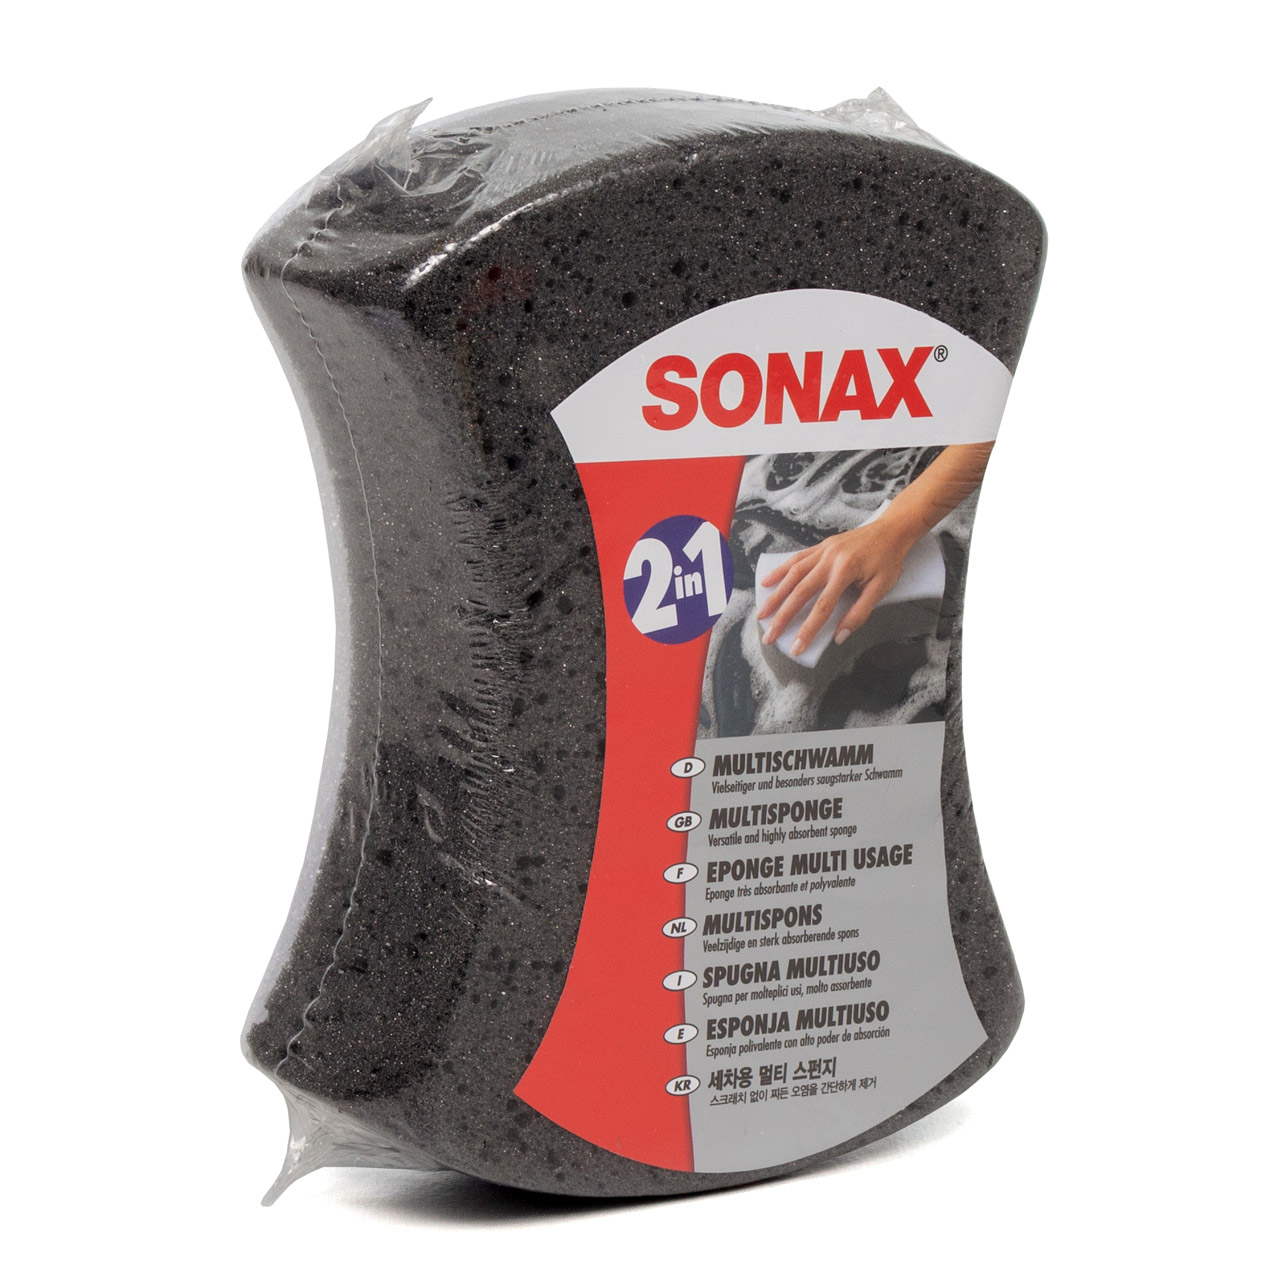 Sonax Mikrofaser Schwamm für die Autowäsche